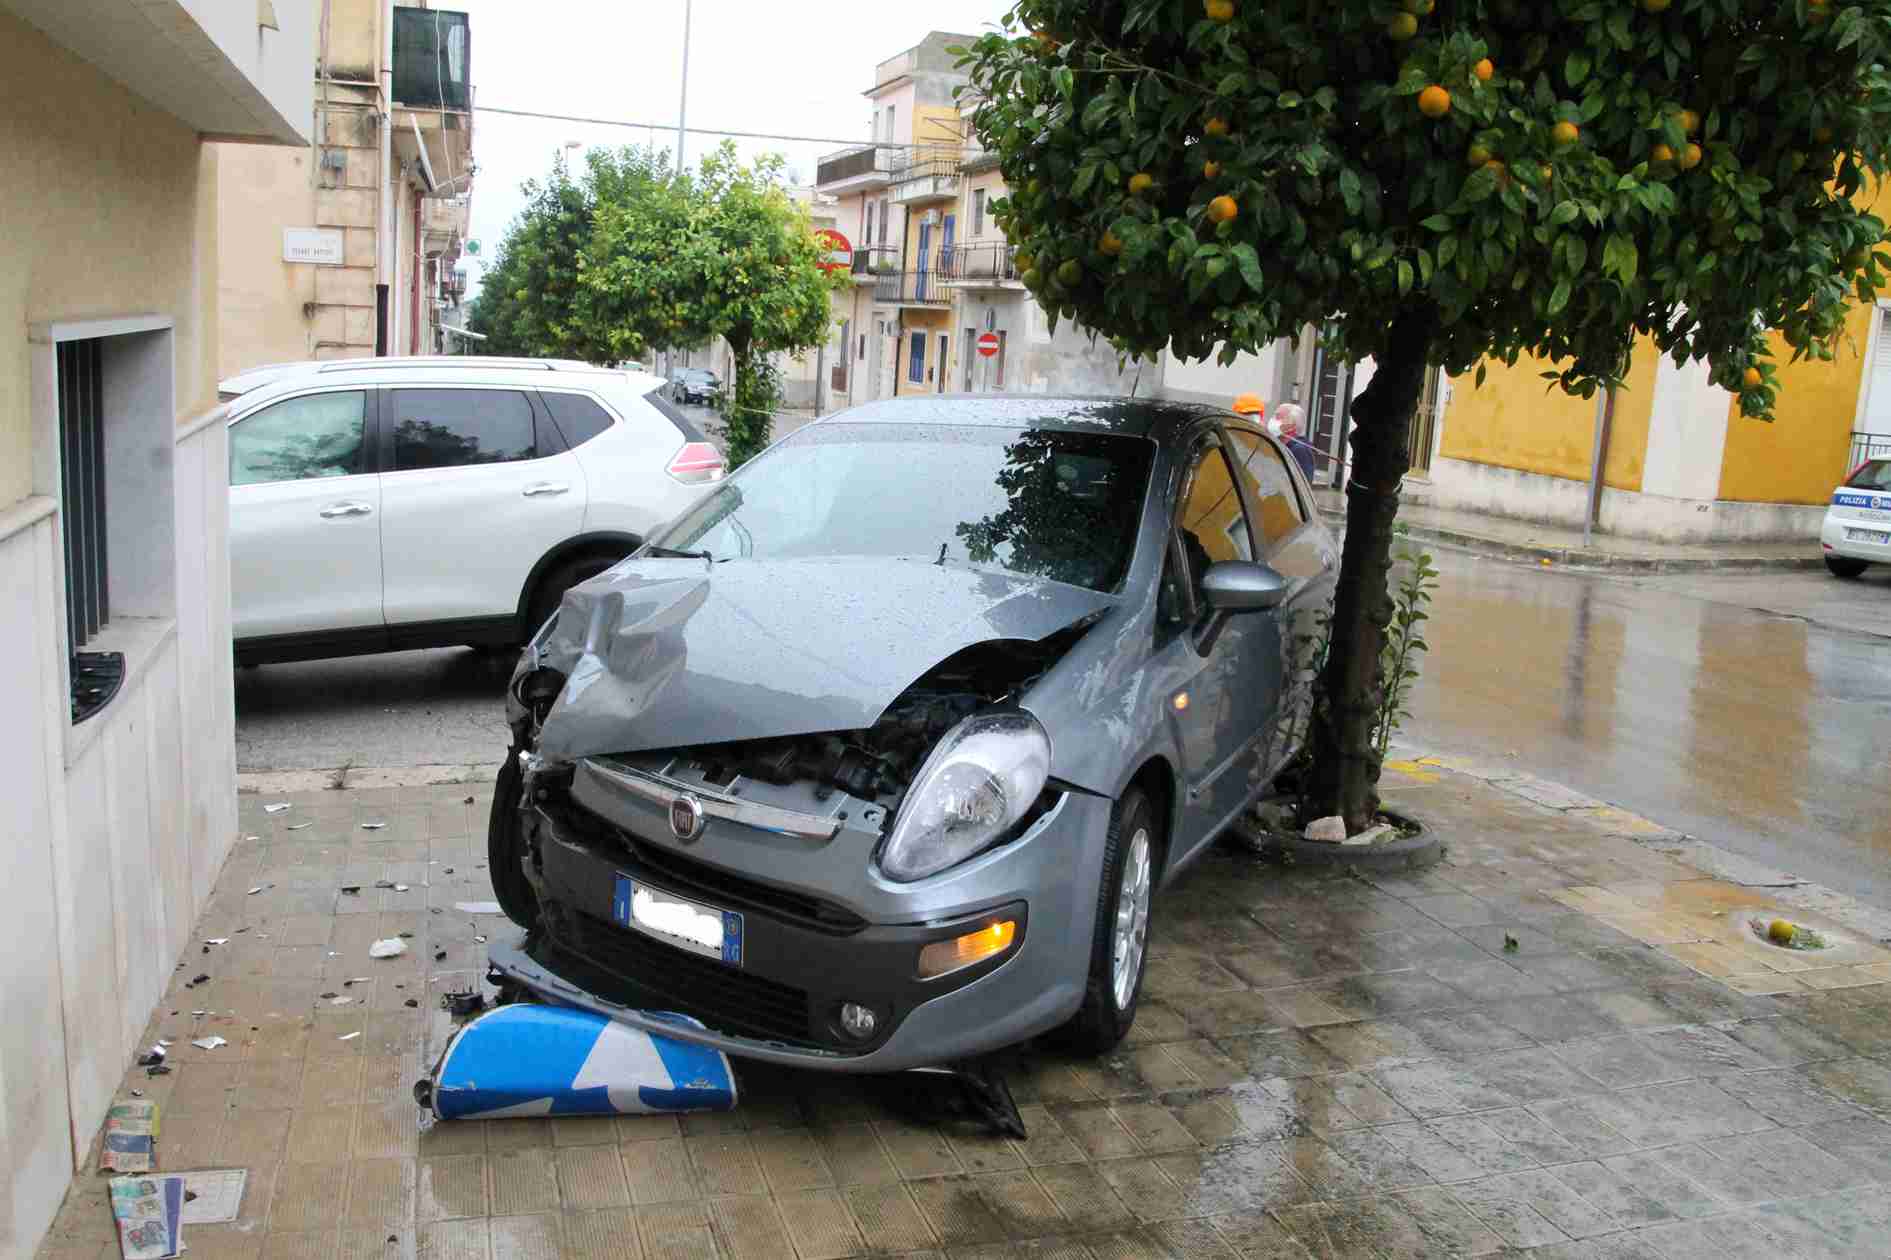 Non si ferma al segnale di “Stop”, incidente tra due auto in via Manzoni/Cesare Battisti